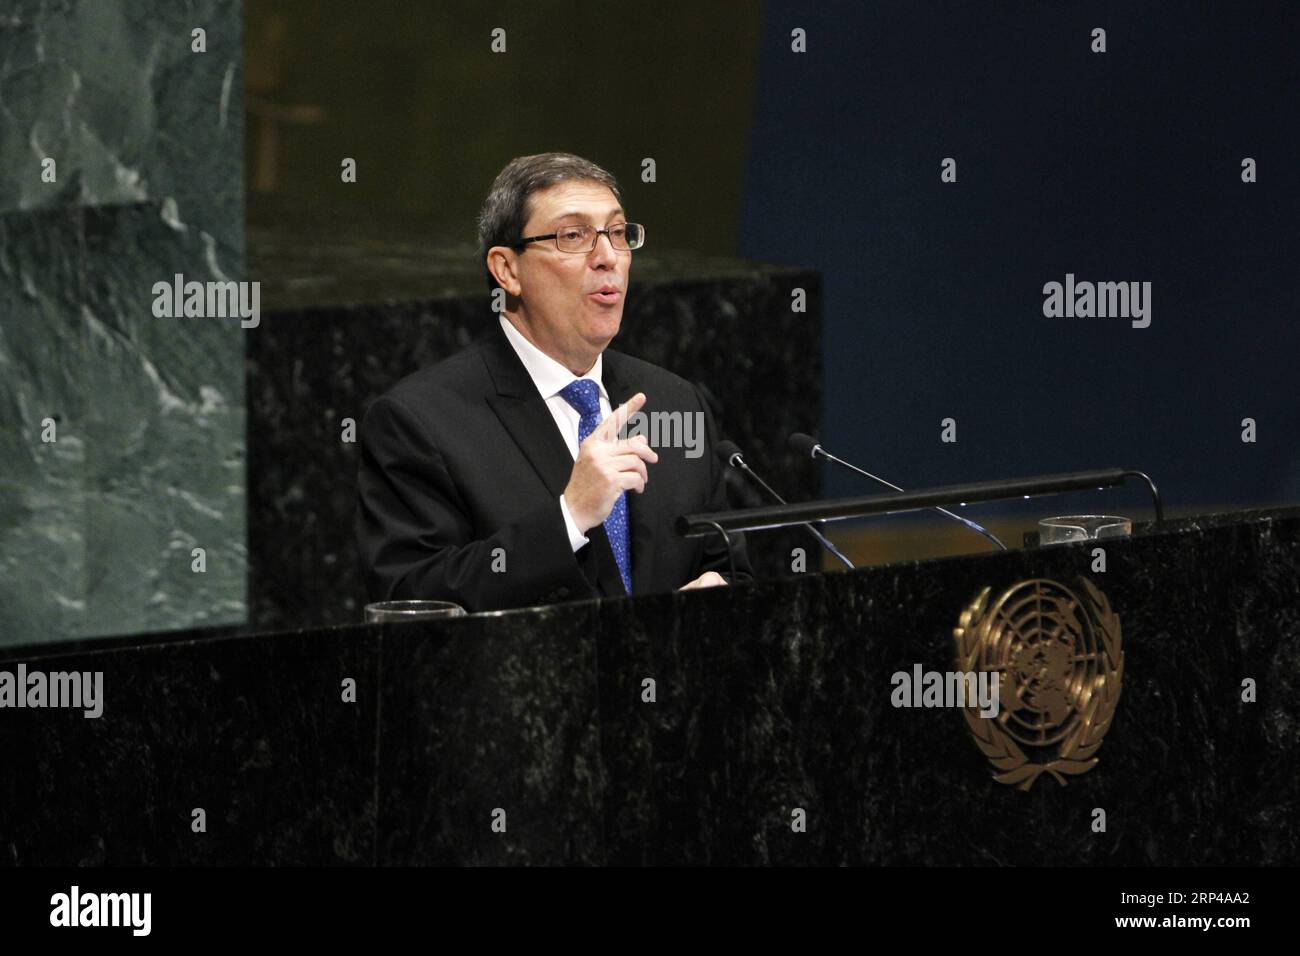 (181101) -- VEREINTEN NATIONEN, 1. November 2018 -- der kubanische Außenminister Bruno Rodriguez spricht vor der Generalversammlung der Vereinten NATIONEN am 1. November 2018 im Hauptquartier der Vereinten NATIONEN in New York. Die Generalversammlung der Vereinten Nationen hat am Donnerstag eine unverbindliche Resolution angenommen, in der die Aufhebung des Embargos der Vereinigten Staaten gegen Kuba gefordert wird. Der von Kuba vorgelegte Entschließungsentwurf erhielt 189 Ja-Stimmen und zwei Nein-Stimmen auf der 193-köpfigen Generalversammlung. ) UN-GENERALVERSAMMLUNG-KUBA-US-EMBARGO XIEXE PUBLICATIONXNOTXINXCHN Stockfoto